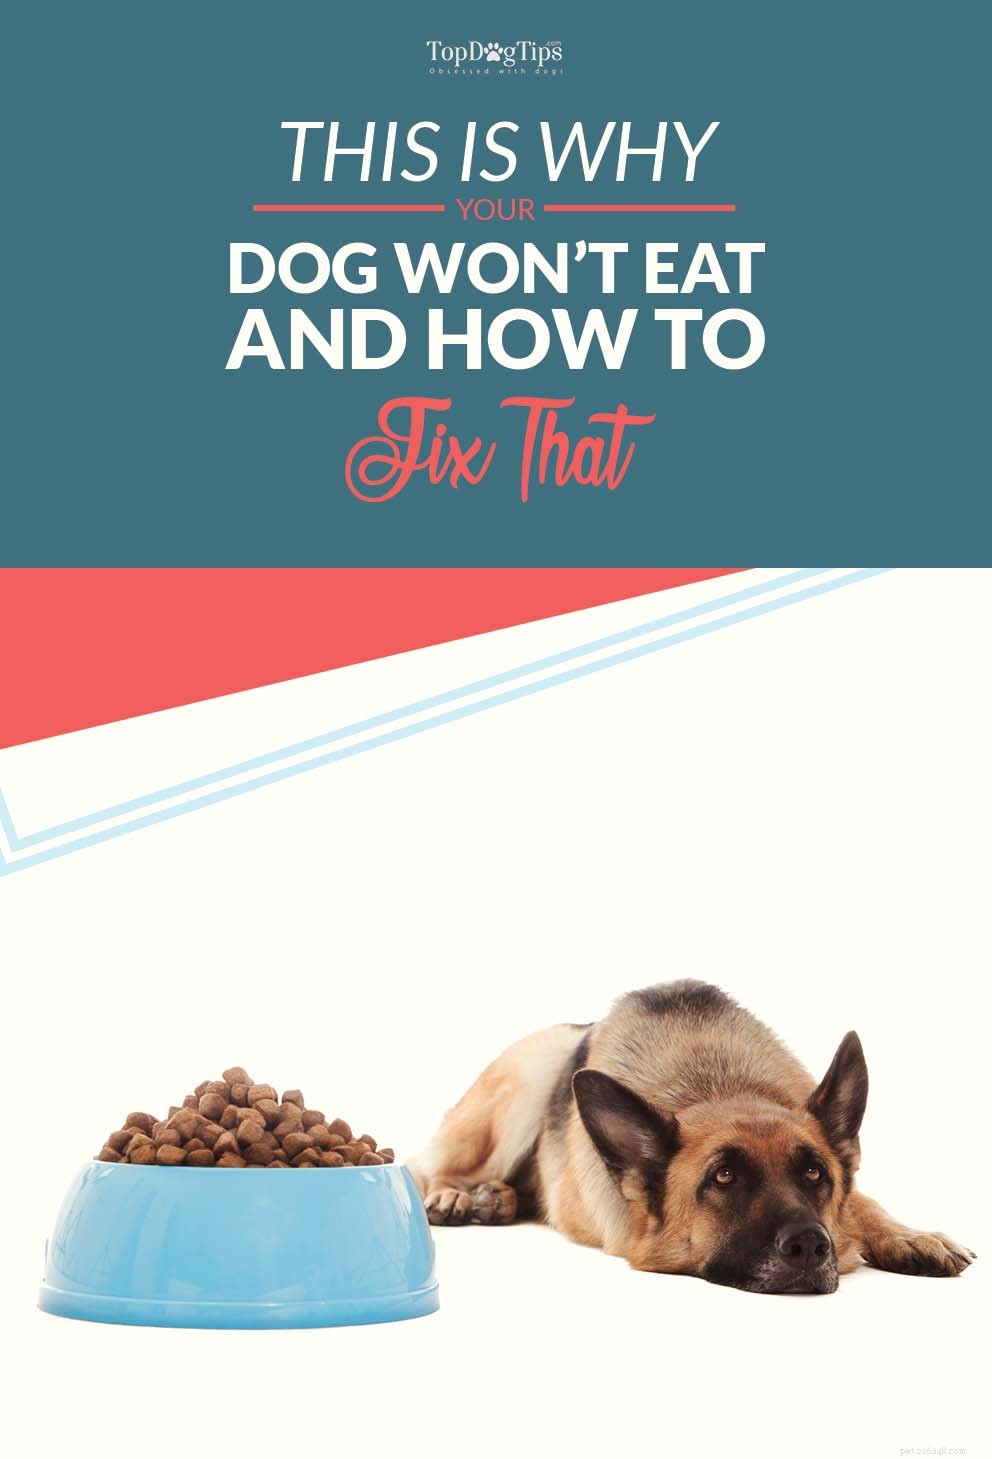 Pourquoi mon chien ne mange-t-il pas ? Voici pourquoi les chiens peuvent refuser de manger